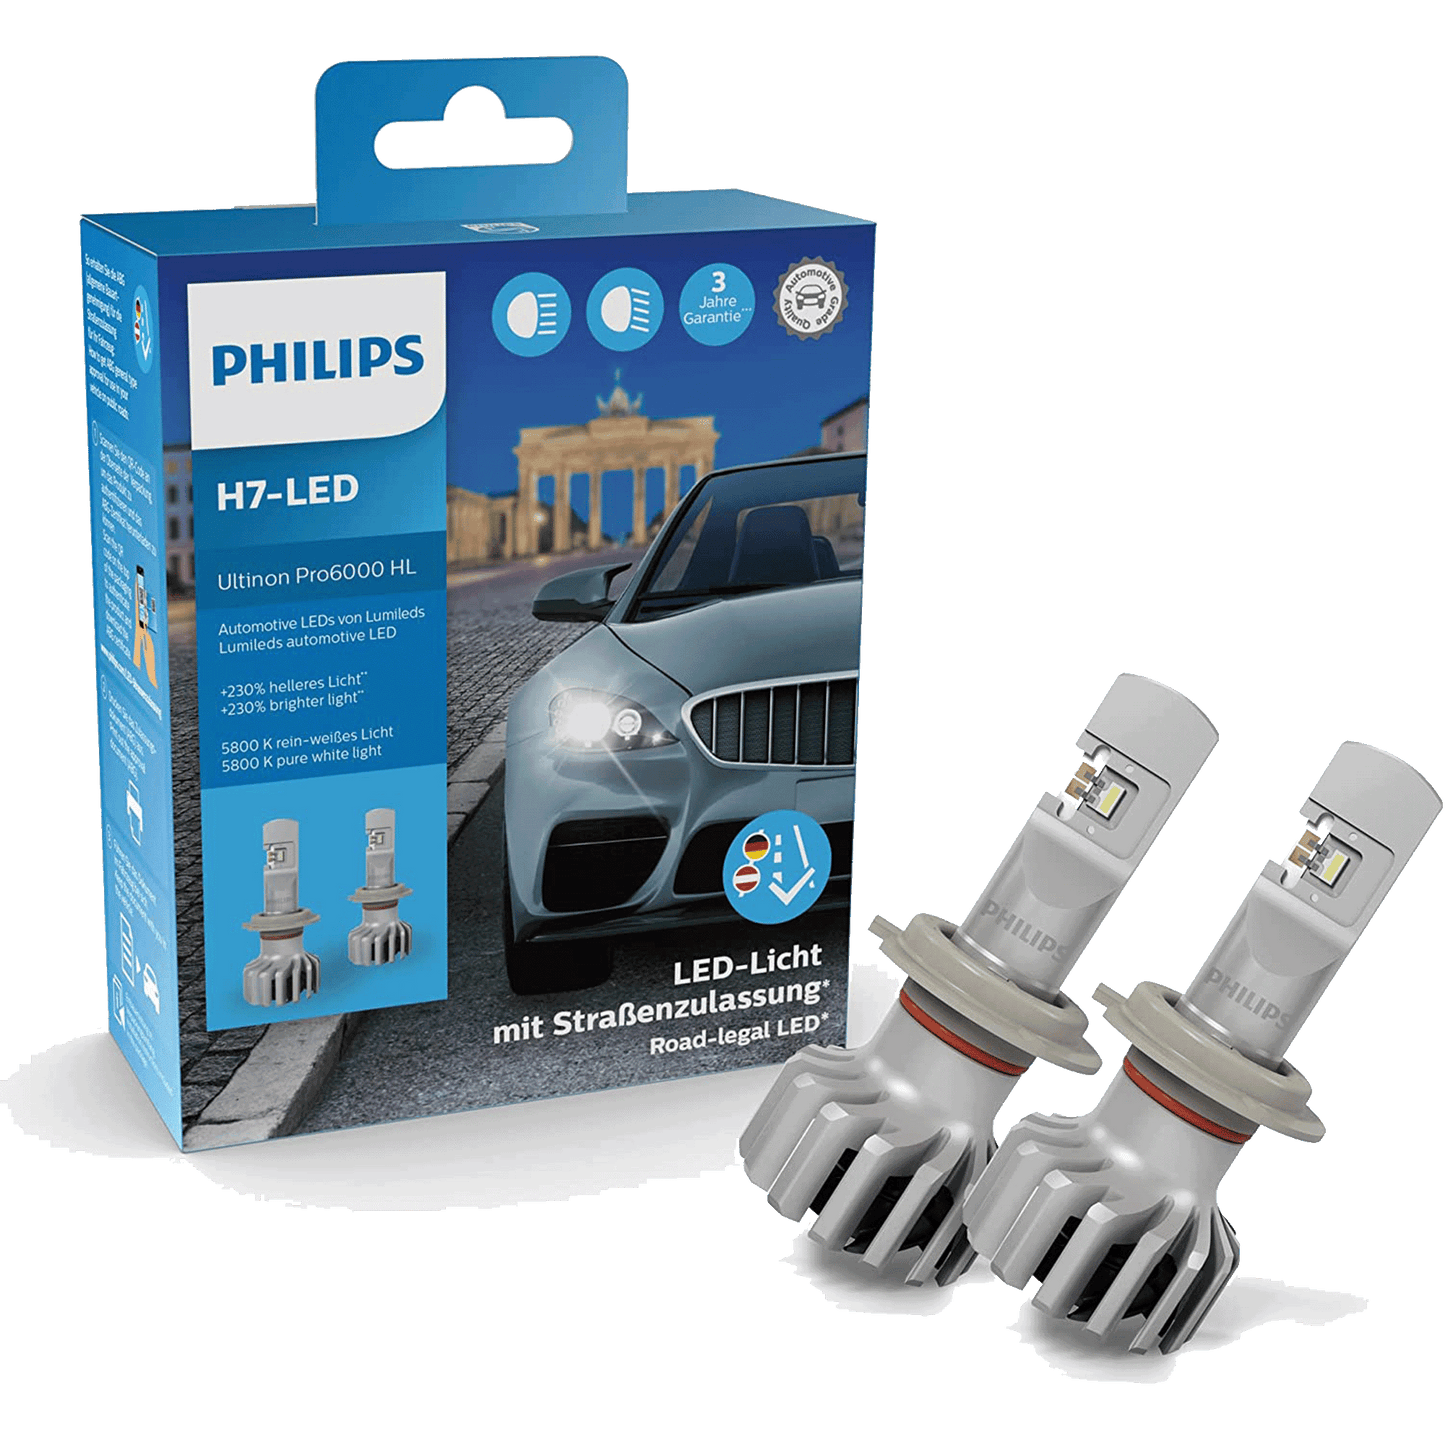 PHILIPS Ultinon Pro6000 H7 LED